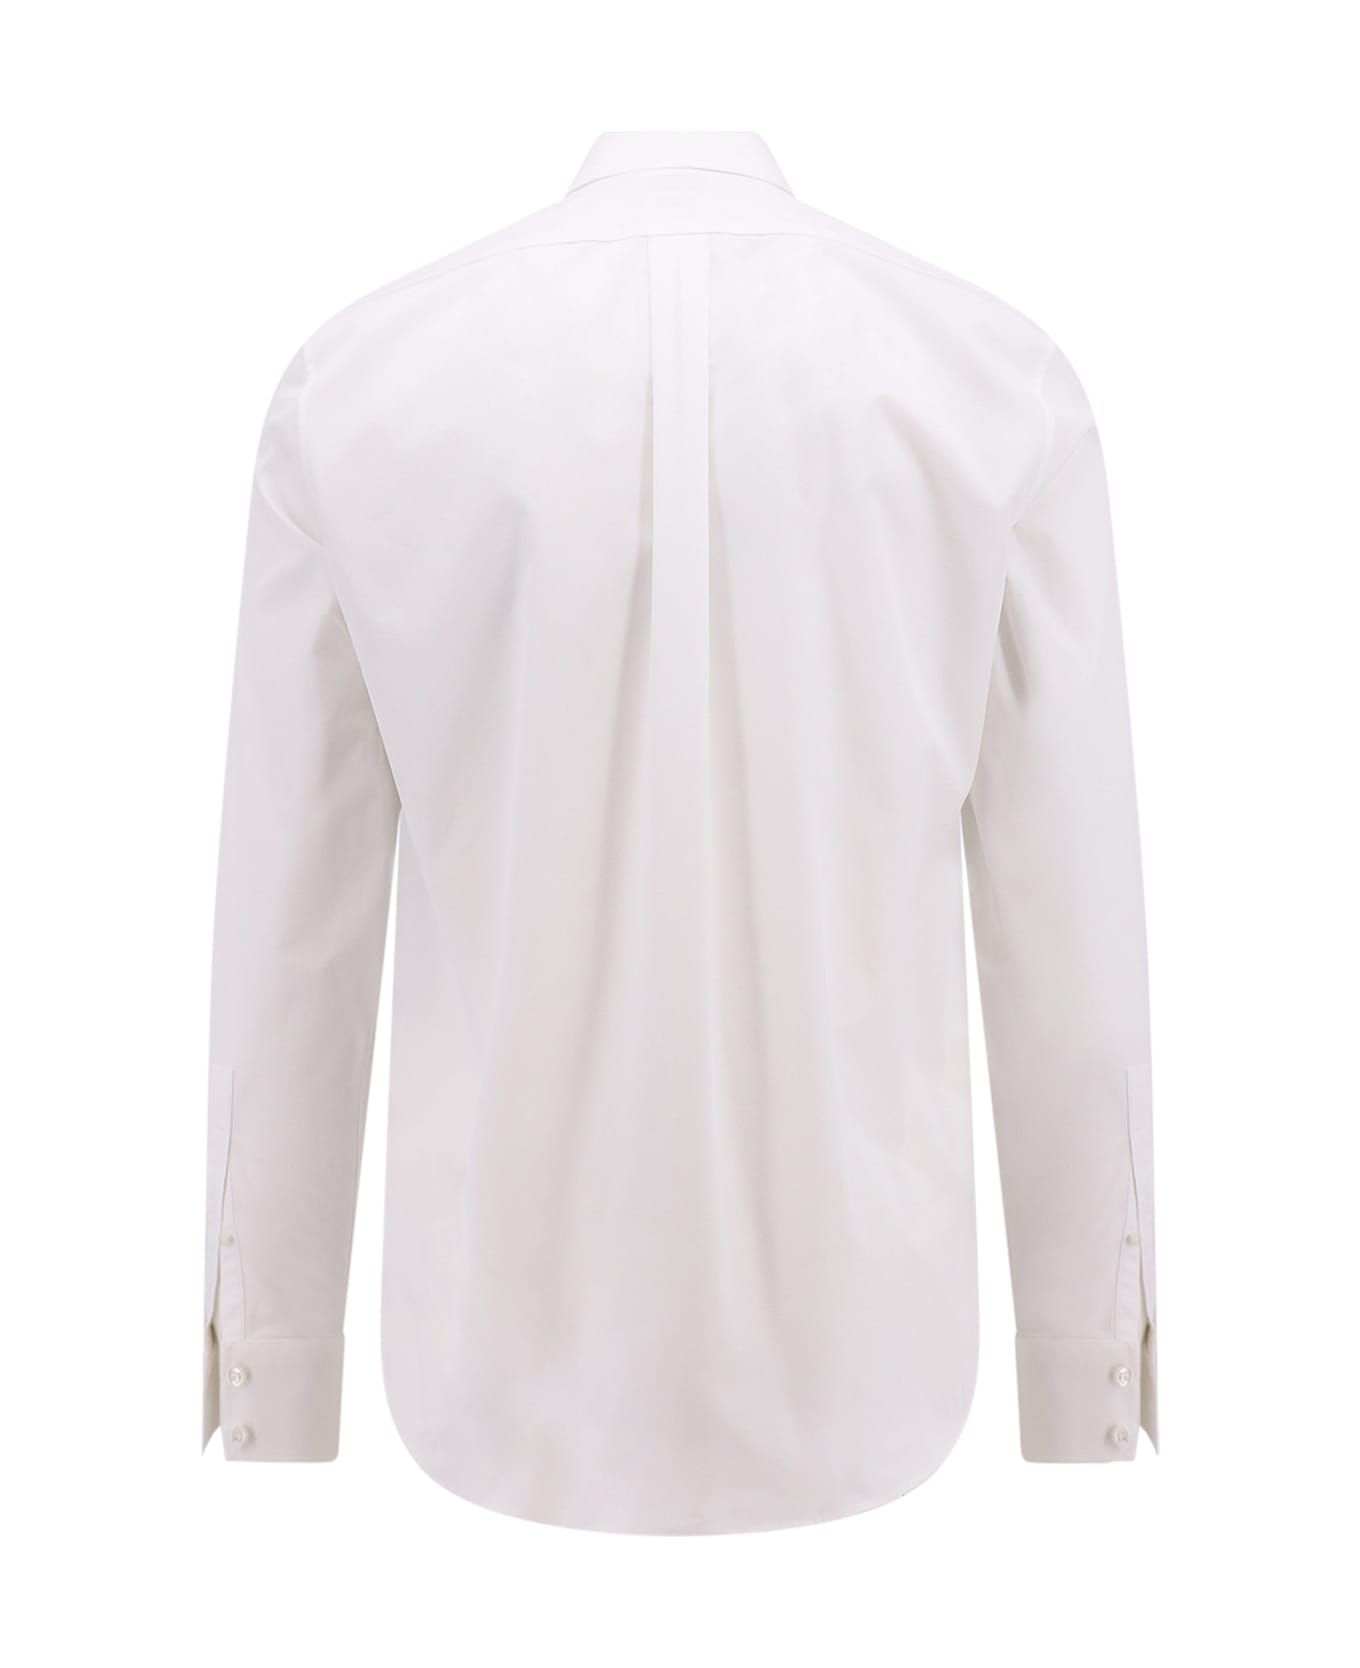 Alexander McQueen Shirt - White